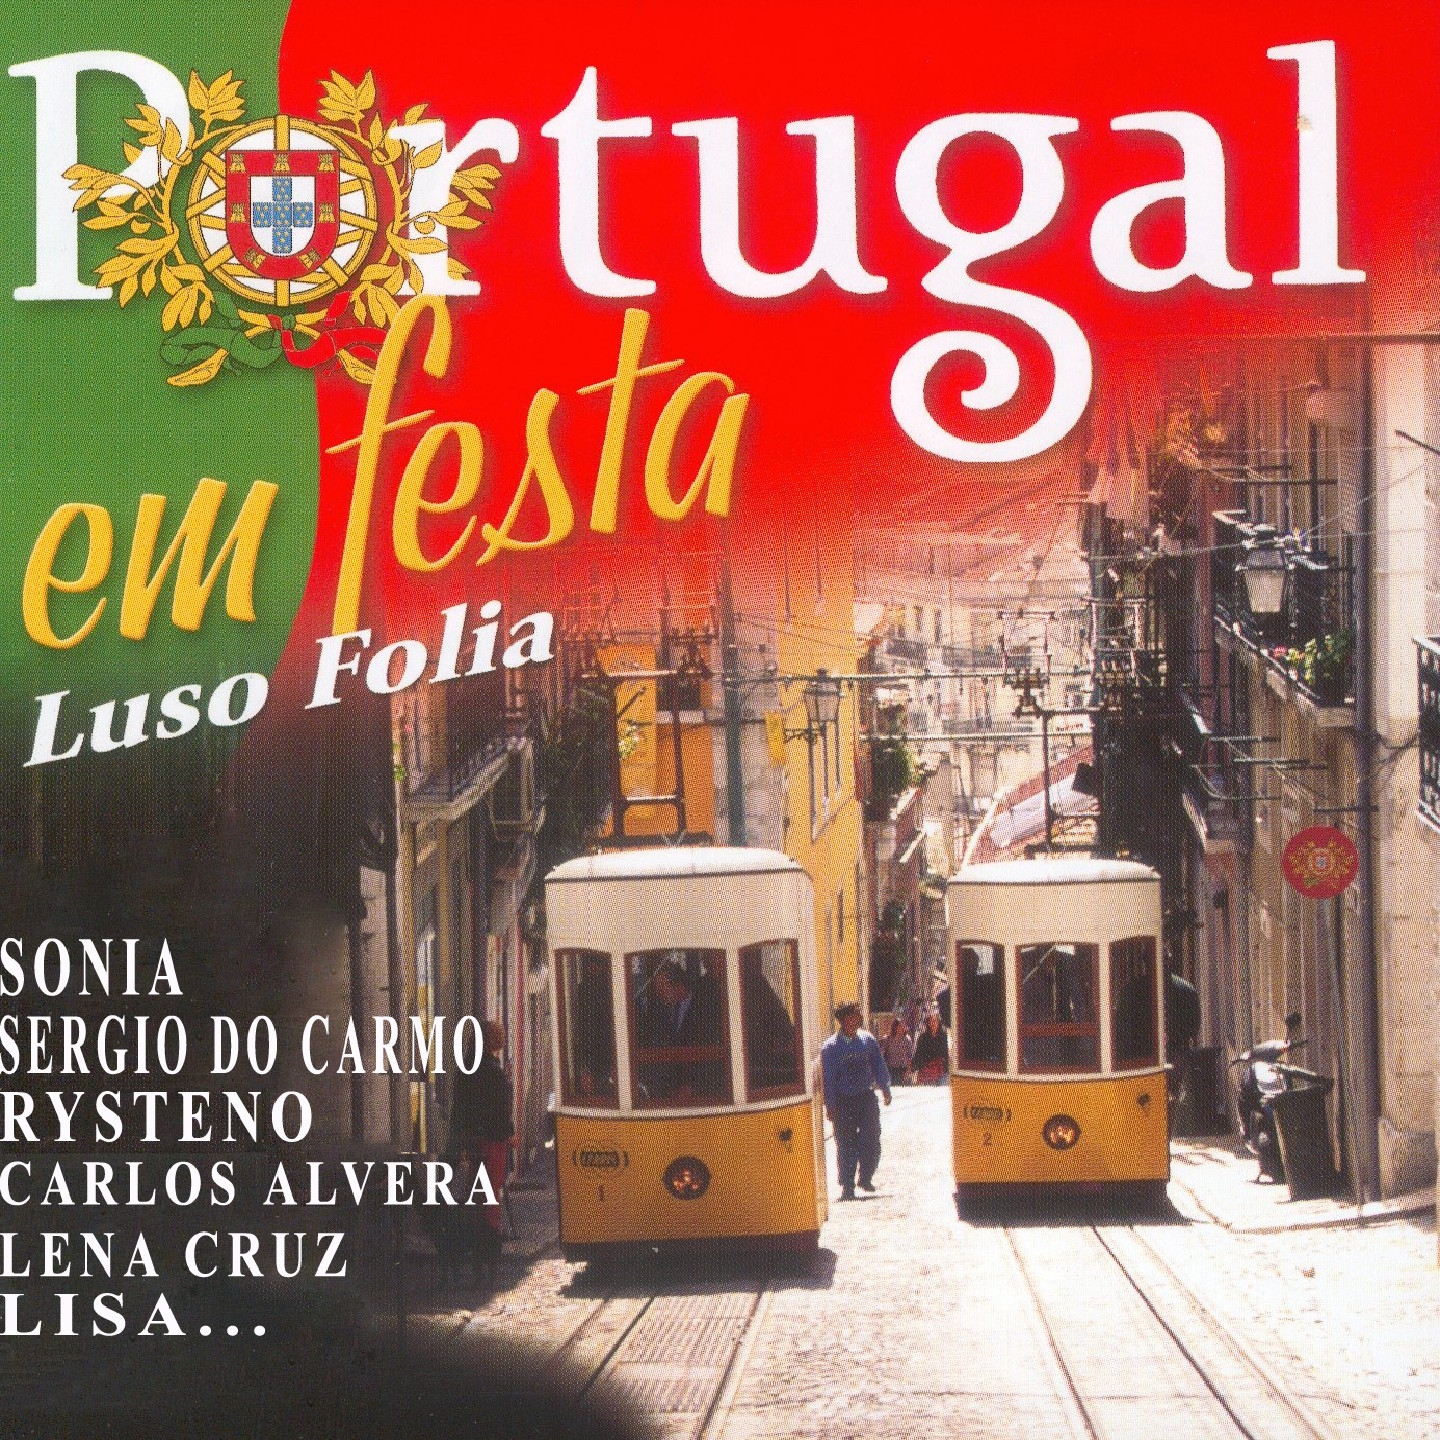 Lisboa em Festa